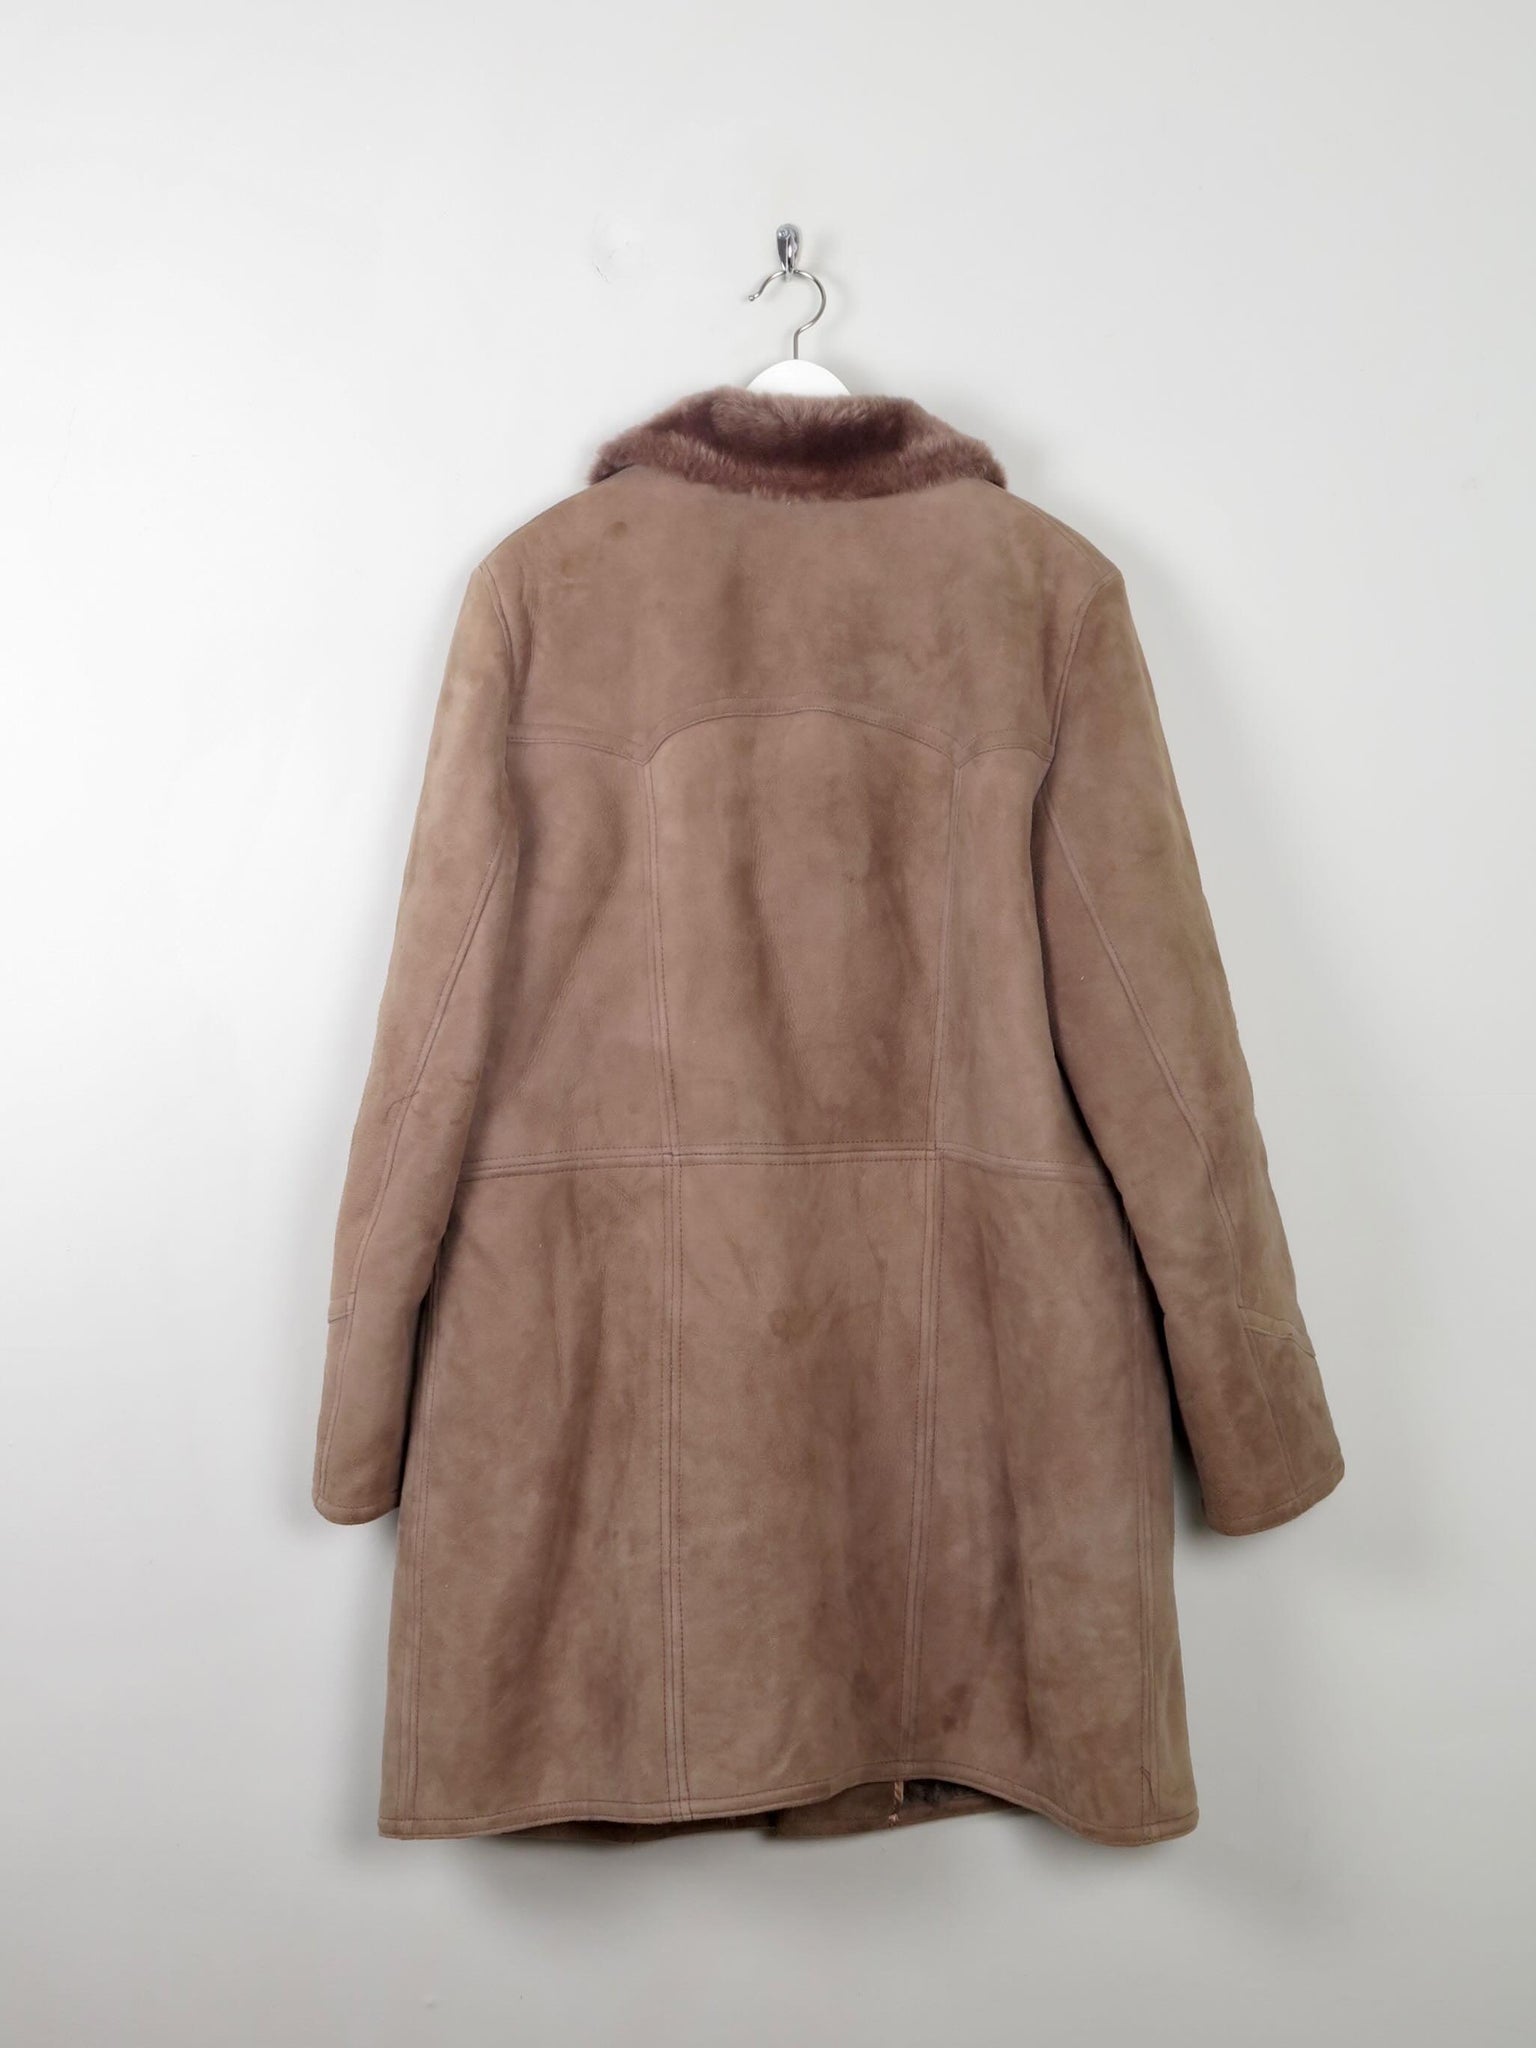 Men's Vintage Sheepskin Coat L - The Harlequin